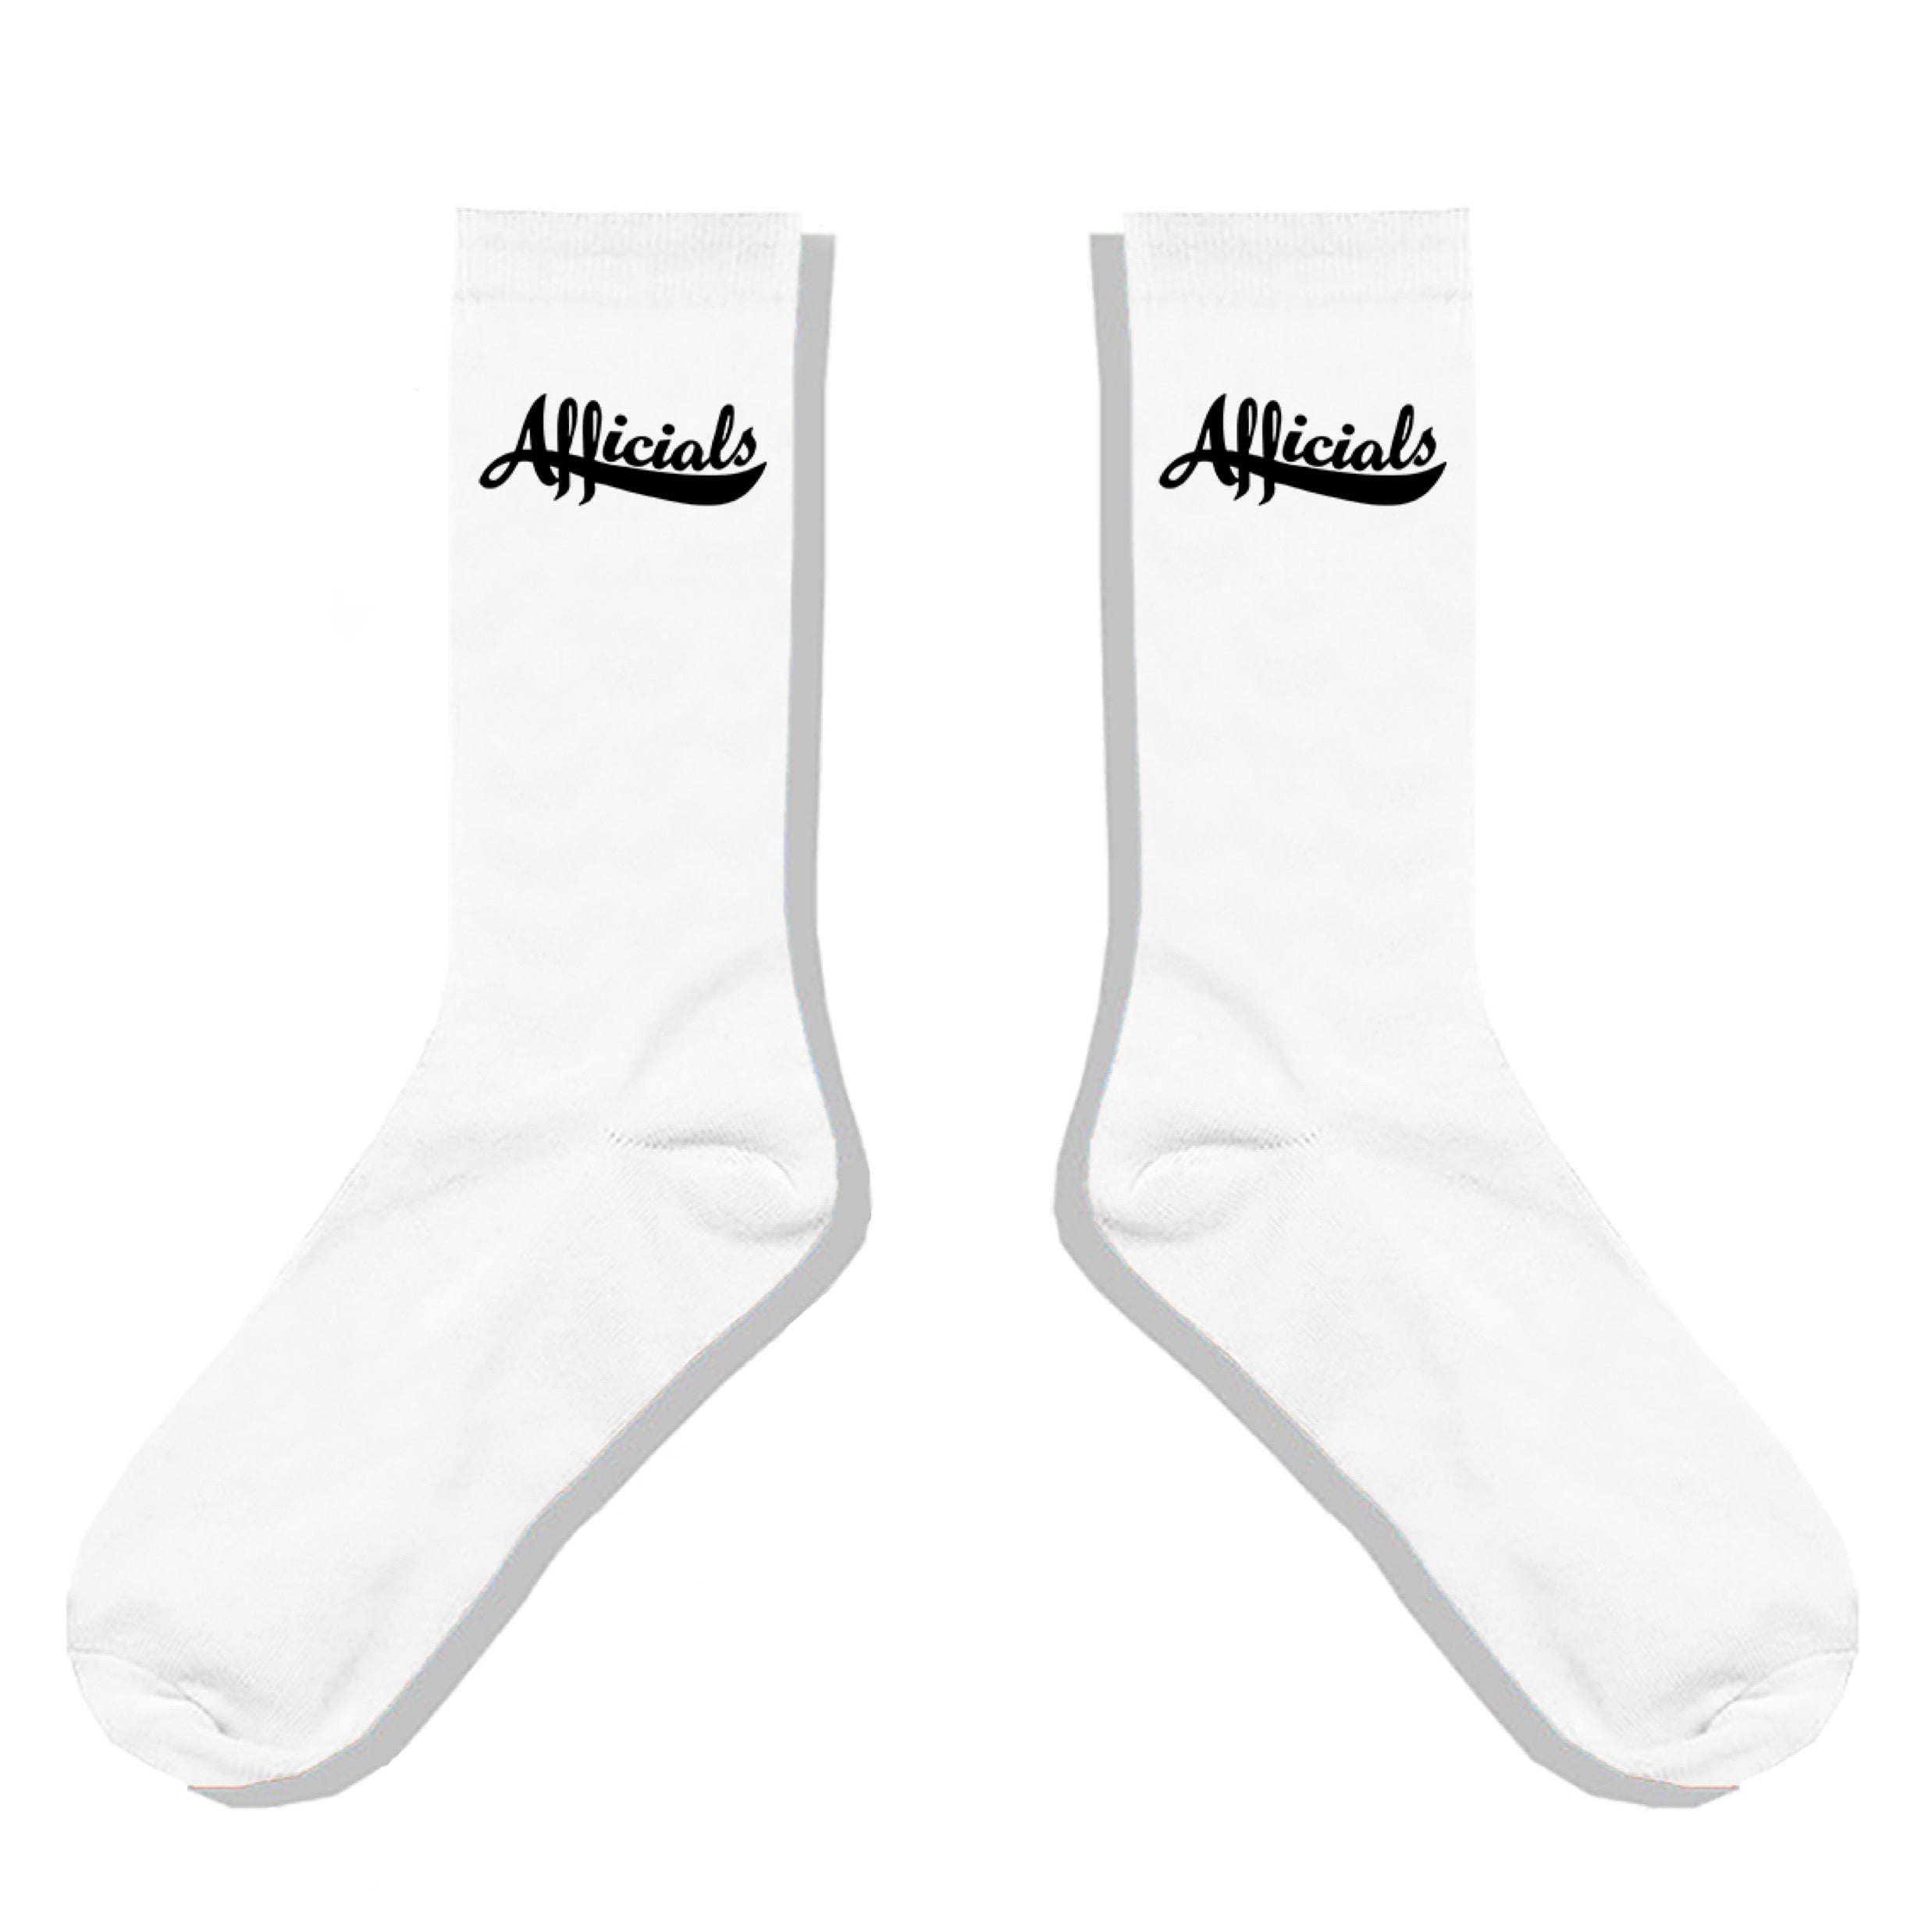 Afficials Socks